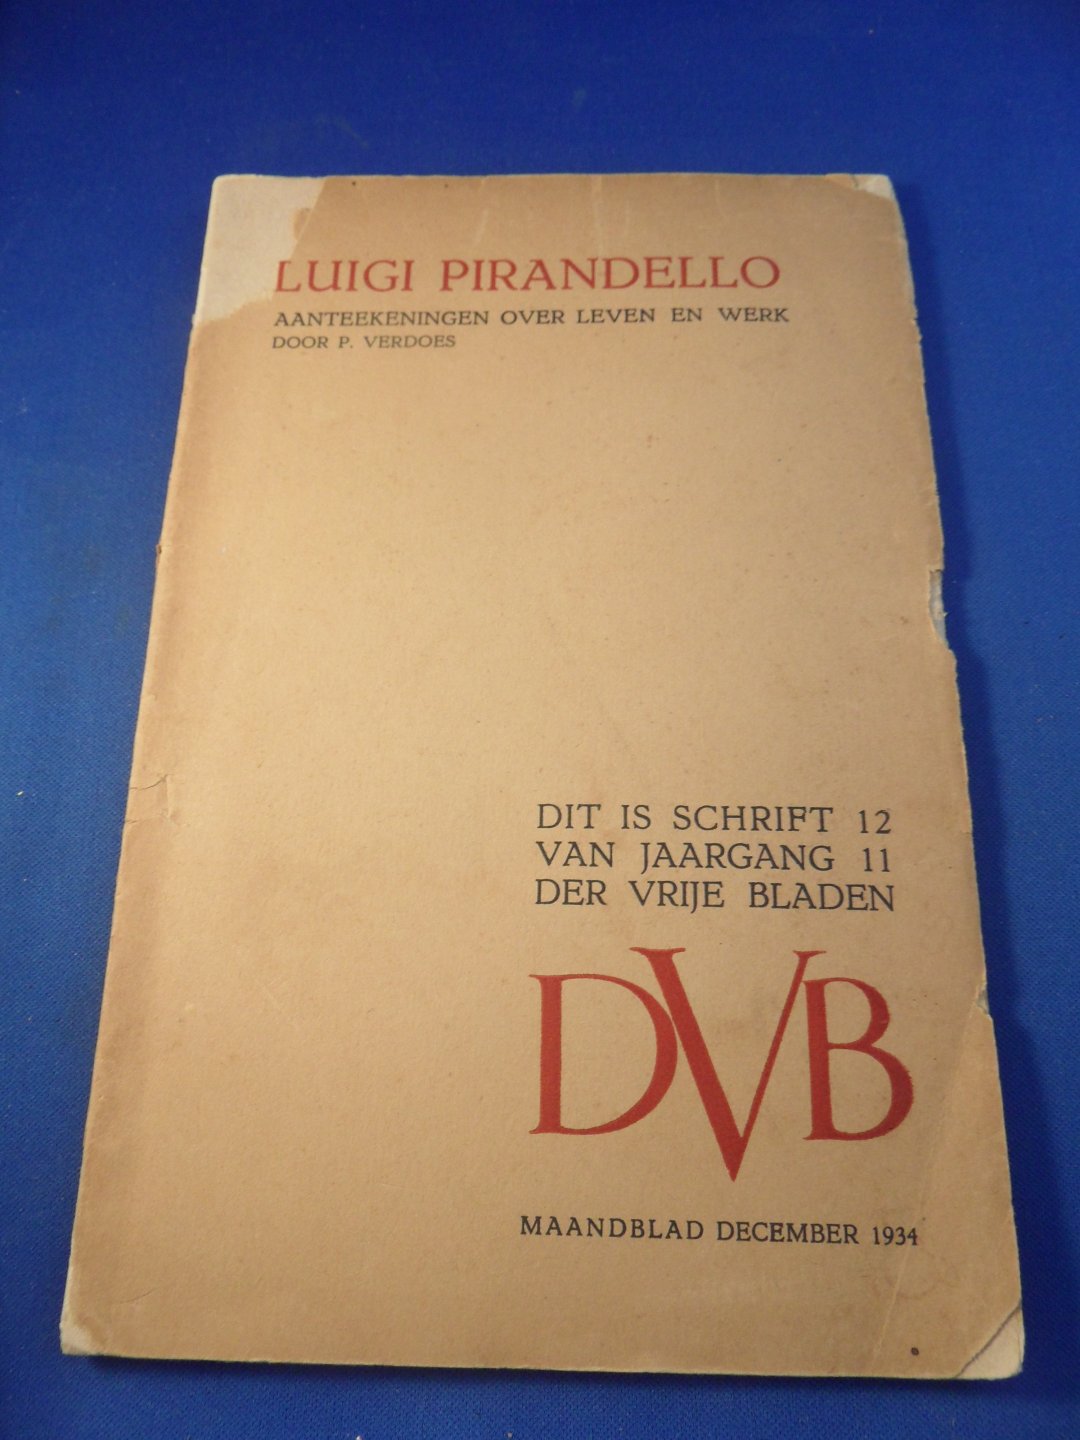 Verdoes, P. - Luigi Pirandello. Aanteekeningen over leven en werk